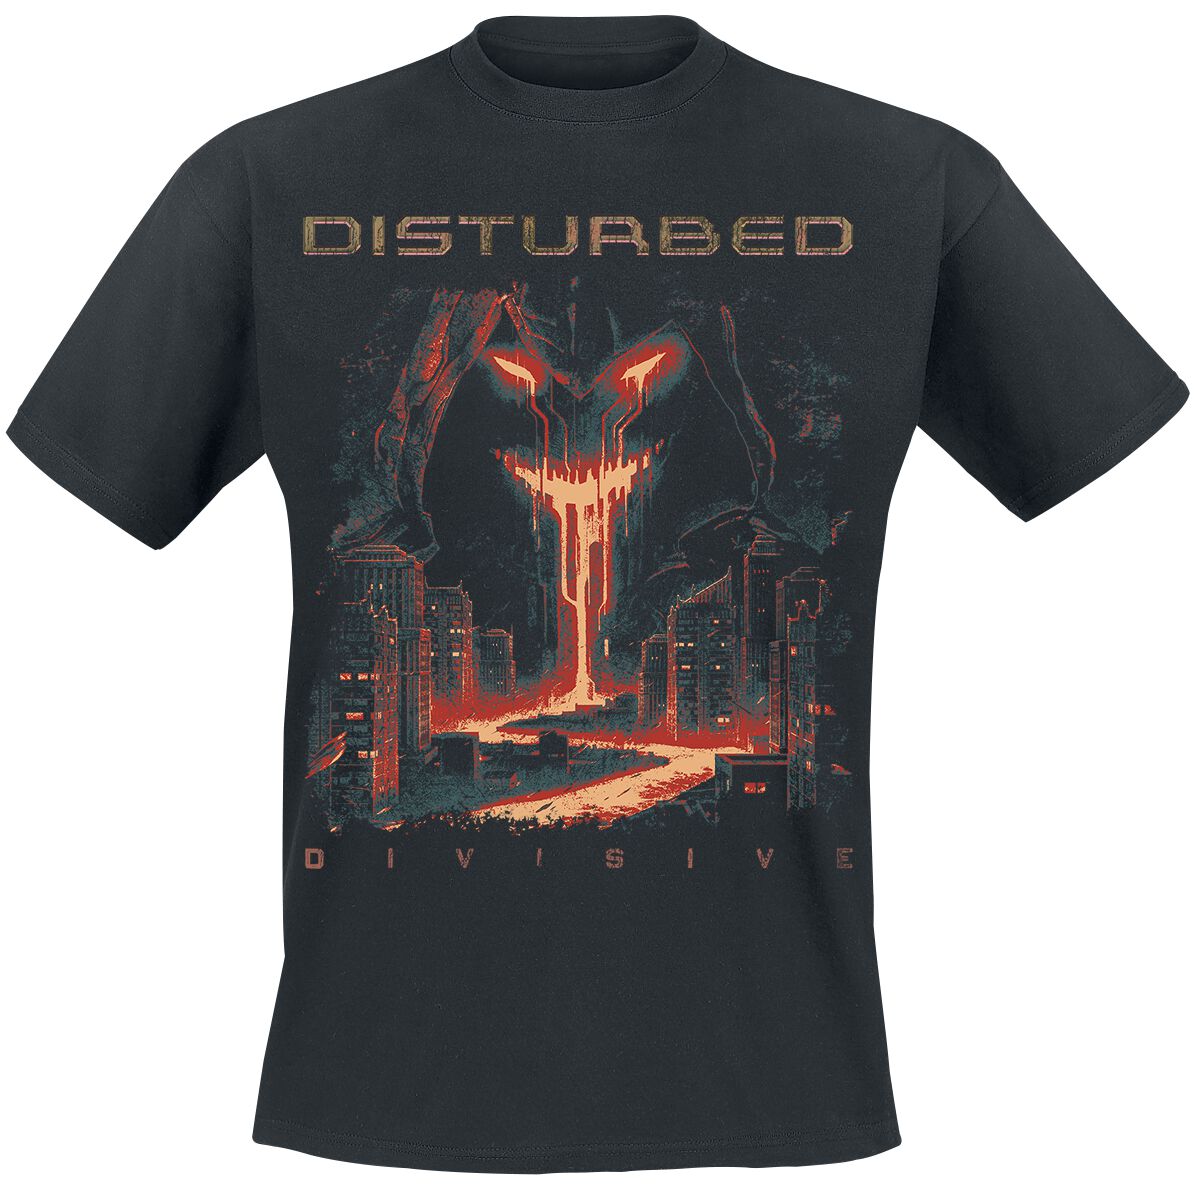 Disturbed T-Shirt - Divisive - S bis 3XL - für Männer - Größe S - schwarz  - Lizenziertes Merchandise!